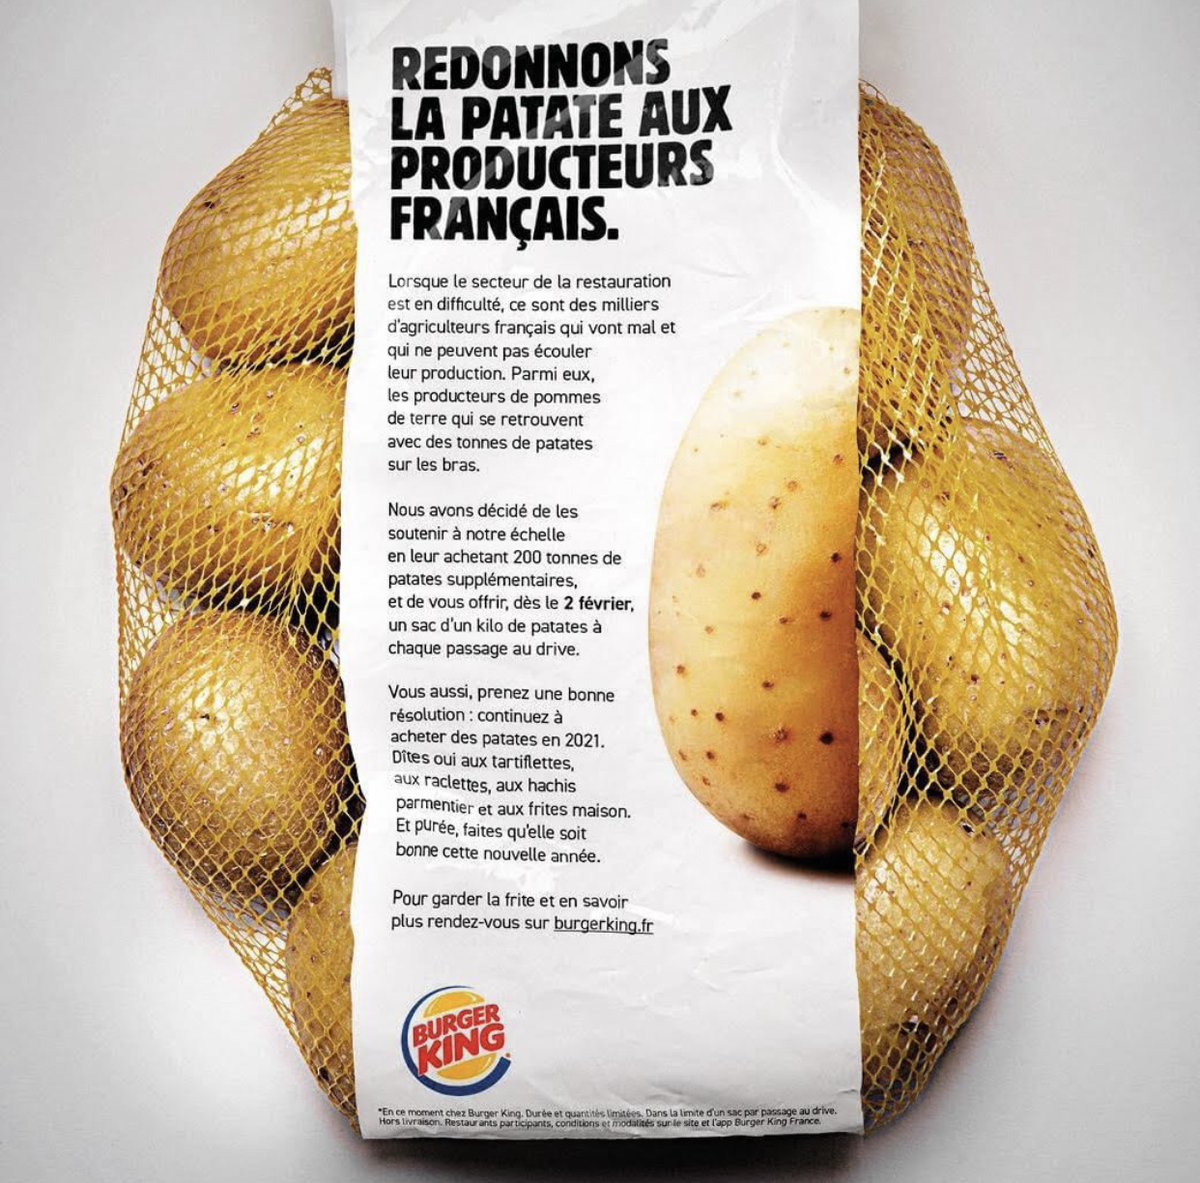 🍔 FLASH - Burger #King va offrir 1 kilo de pommes de terre à chacun de ses clients au drive à partir de demain, afin de soutenir les producteurs des Hauts-de-France. (communiqué)